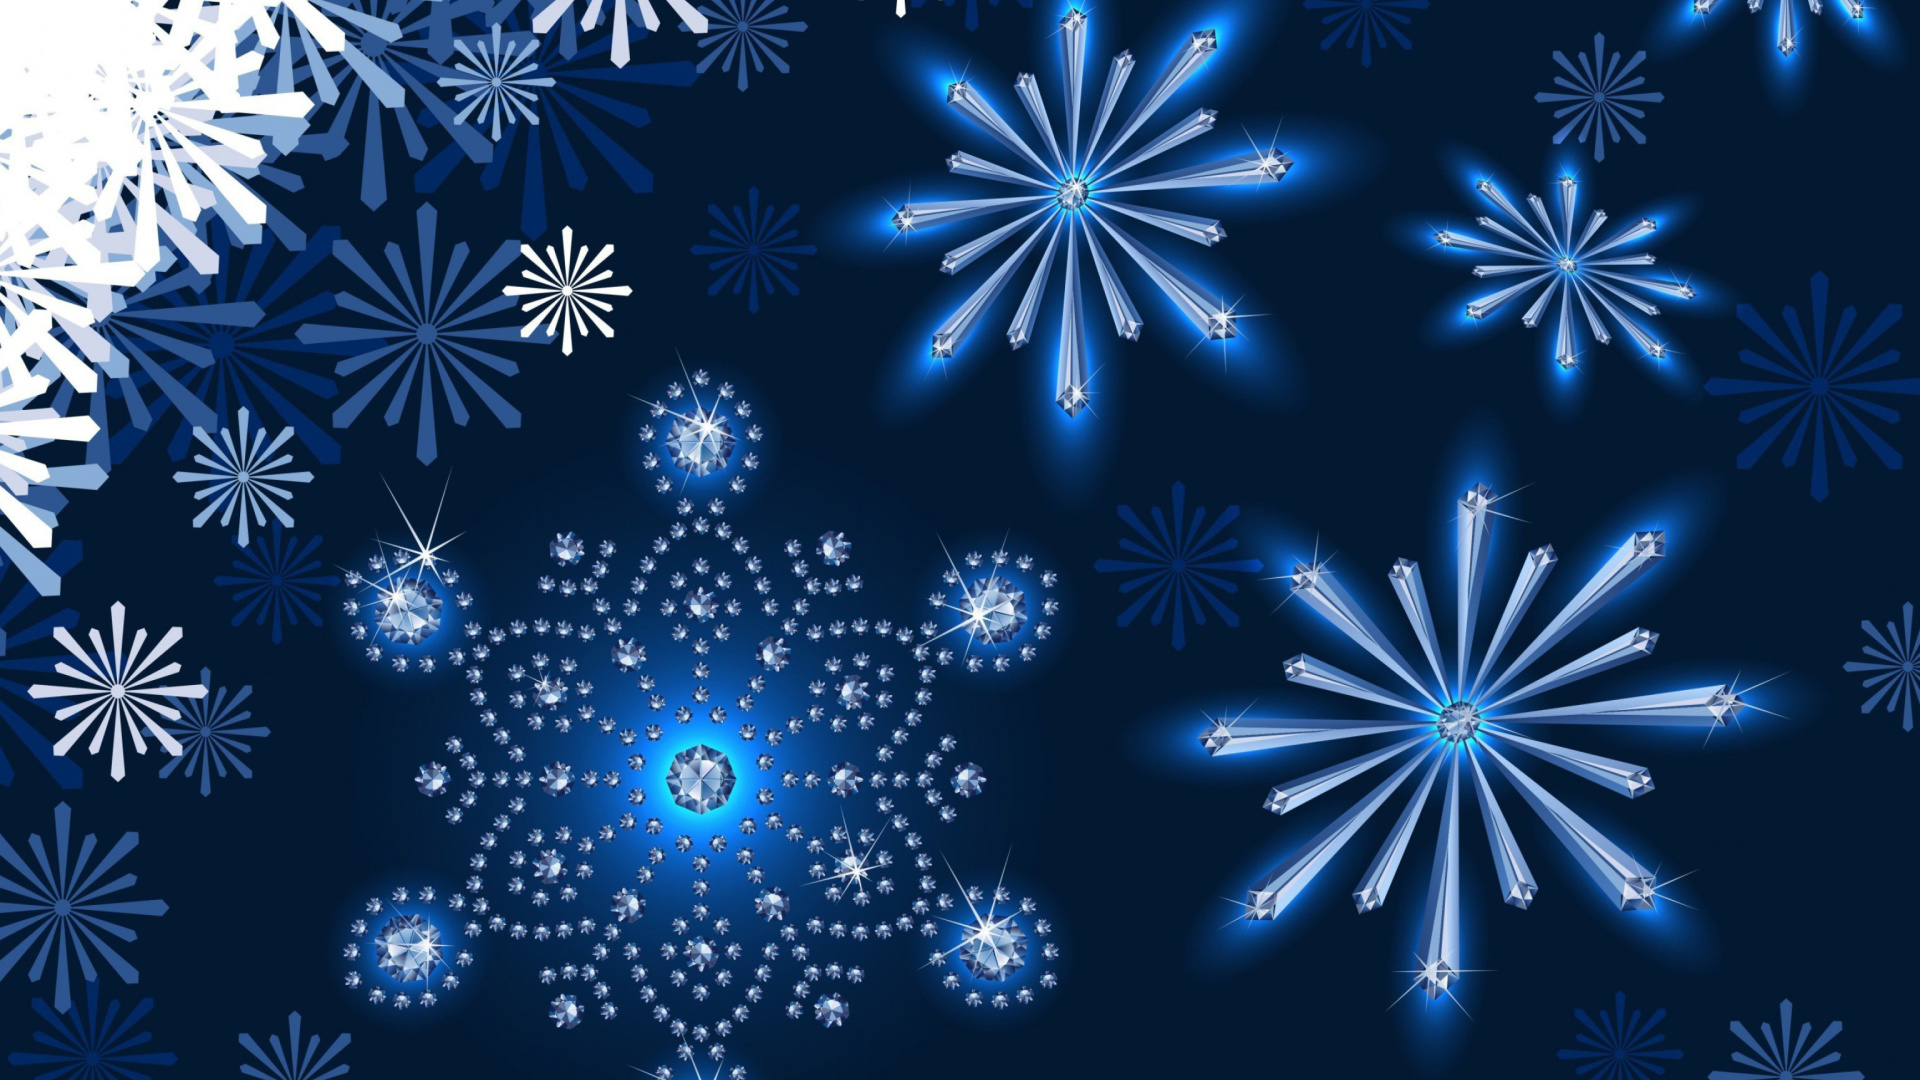 Обои Snowflakes Ornament 1920x1080